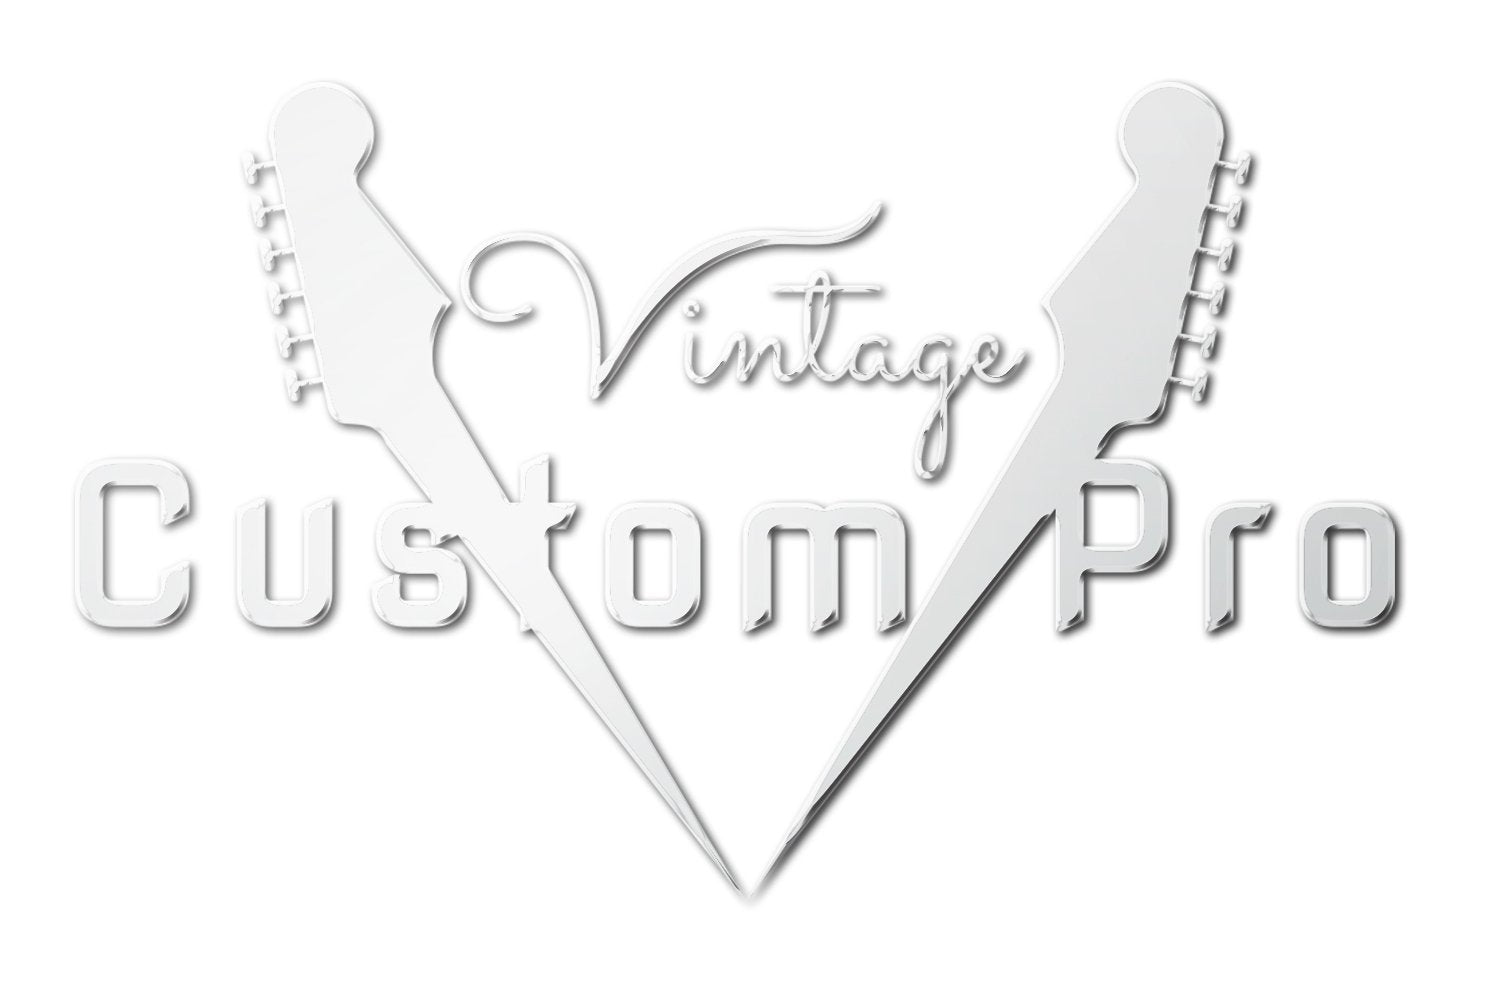 Vintage* V62AB Electric Guitar, Electric Guitar for sale at Richards Guitars.